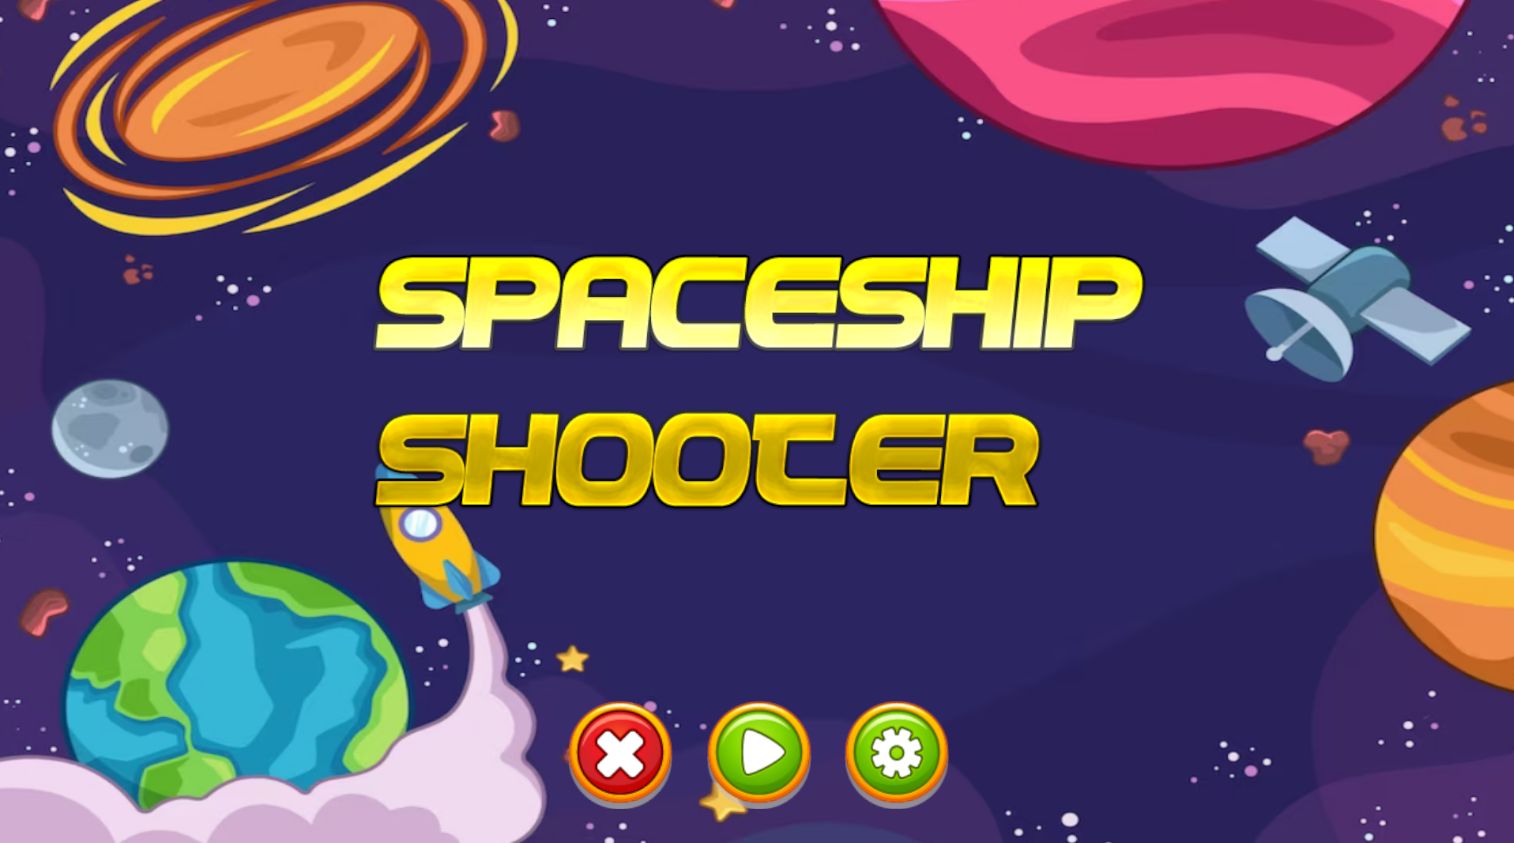 Spaceship Shooter